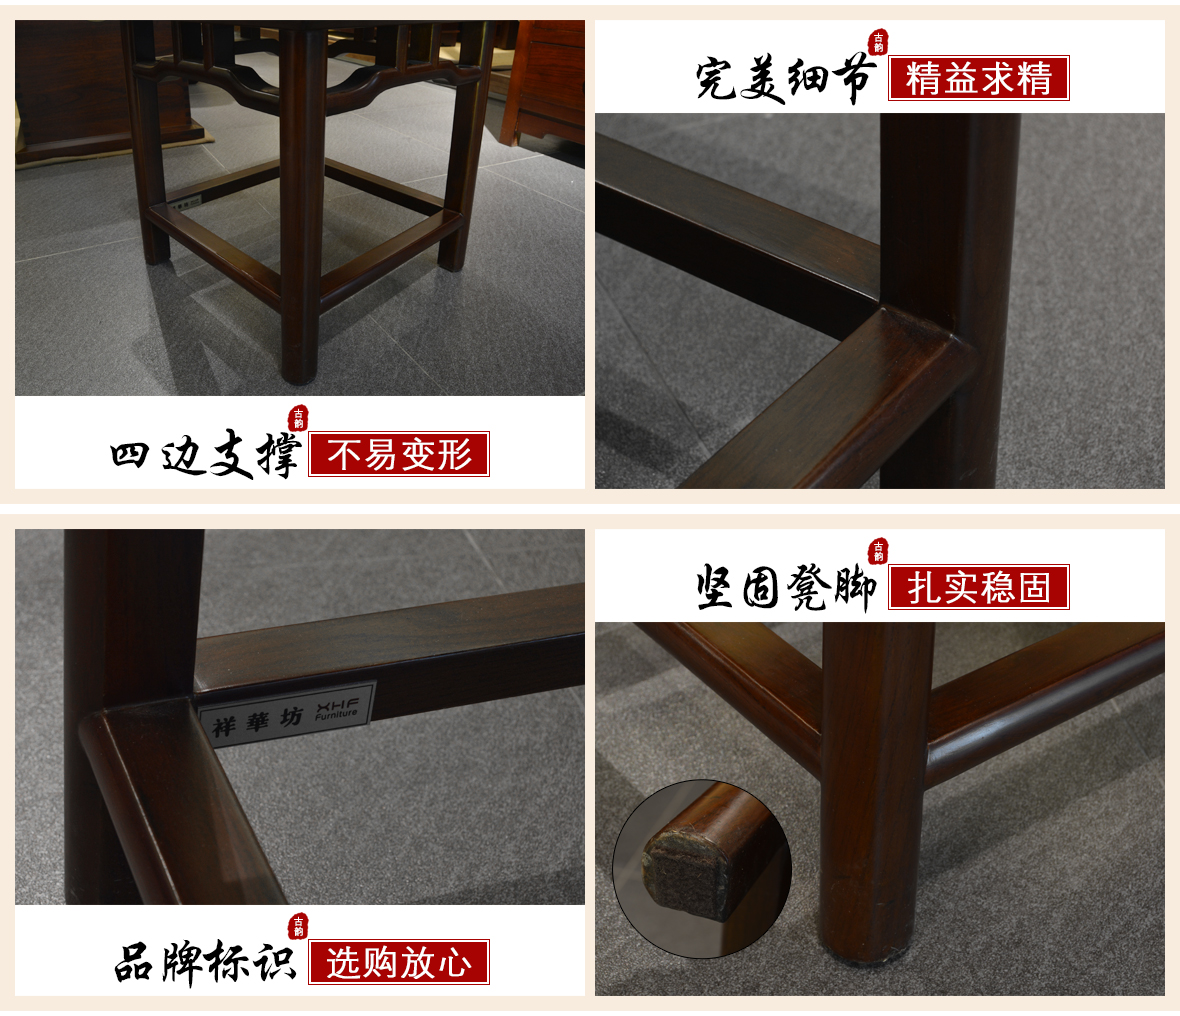 祥华坊家具 XJD-YD01113型号碧月梳妆凳 中式古典实木家具 细节展示